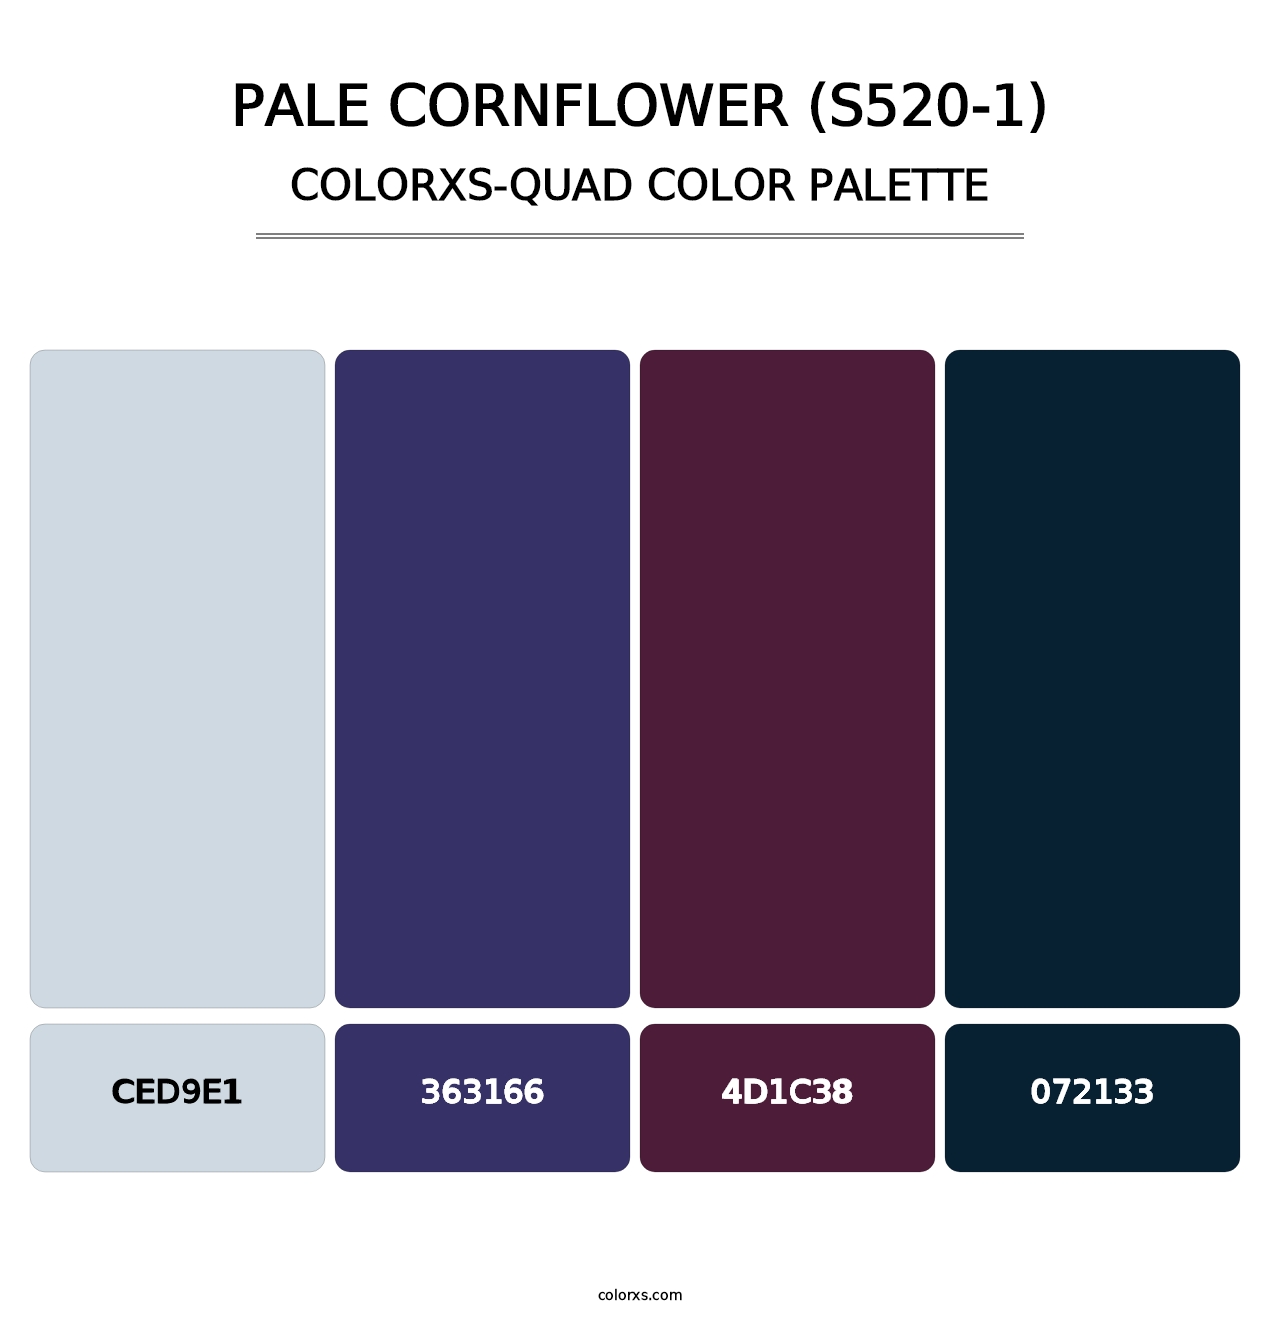 Pale Cornflower (S520-1) - Colorxs Quad Palette